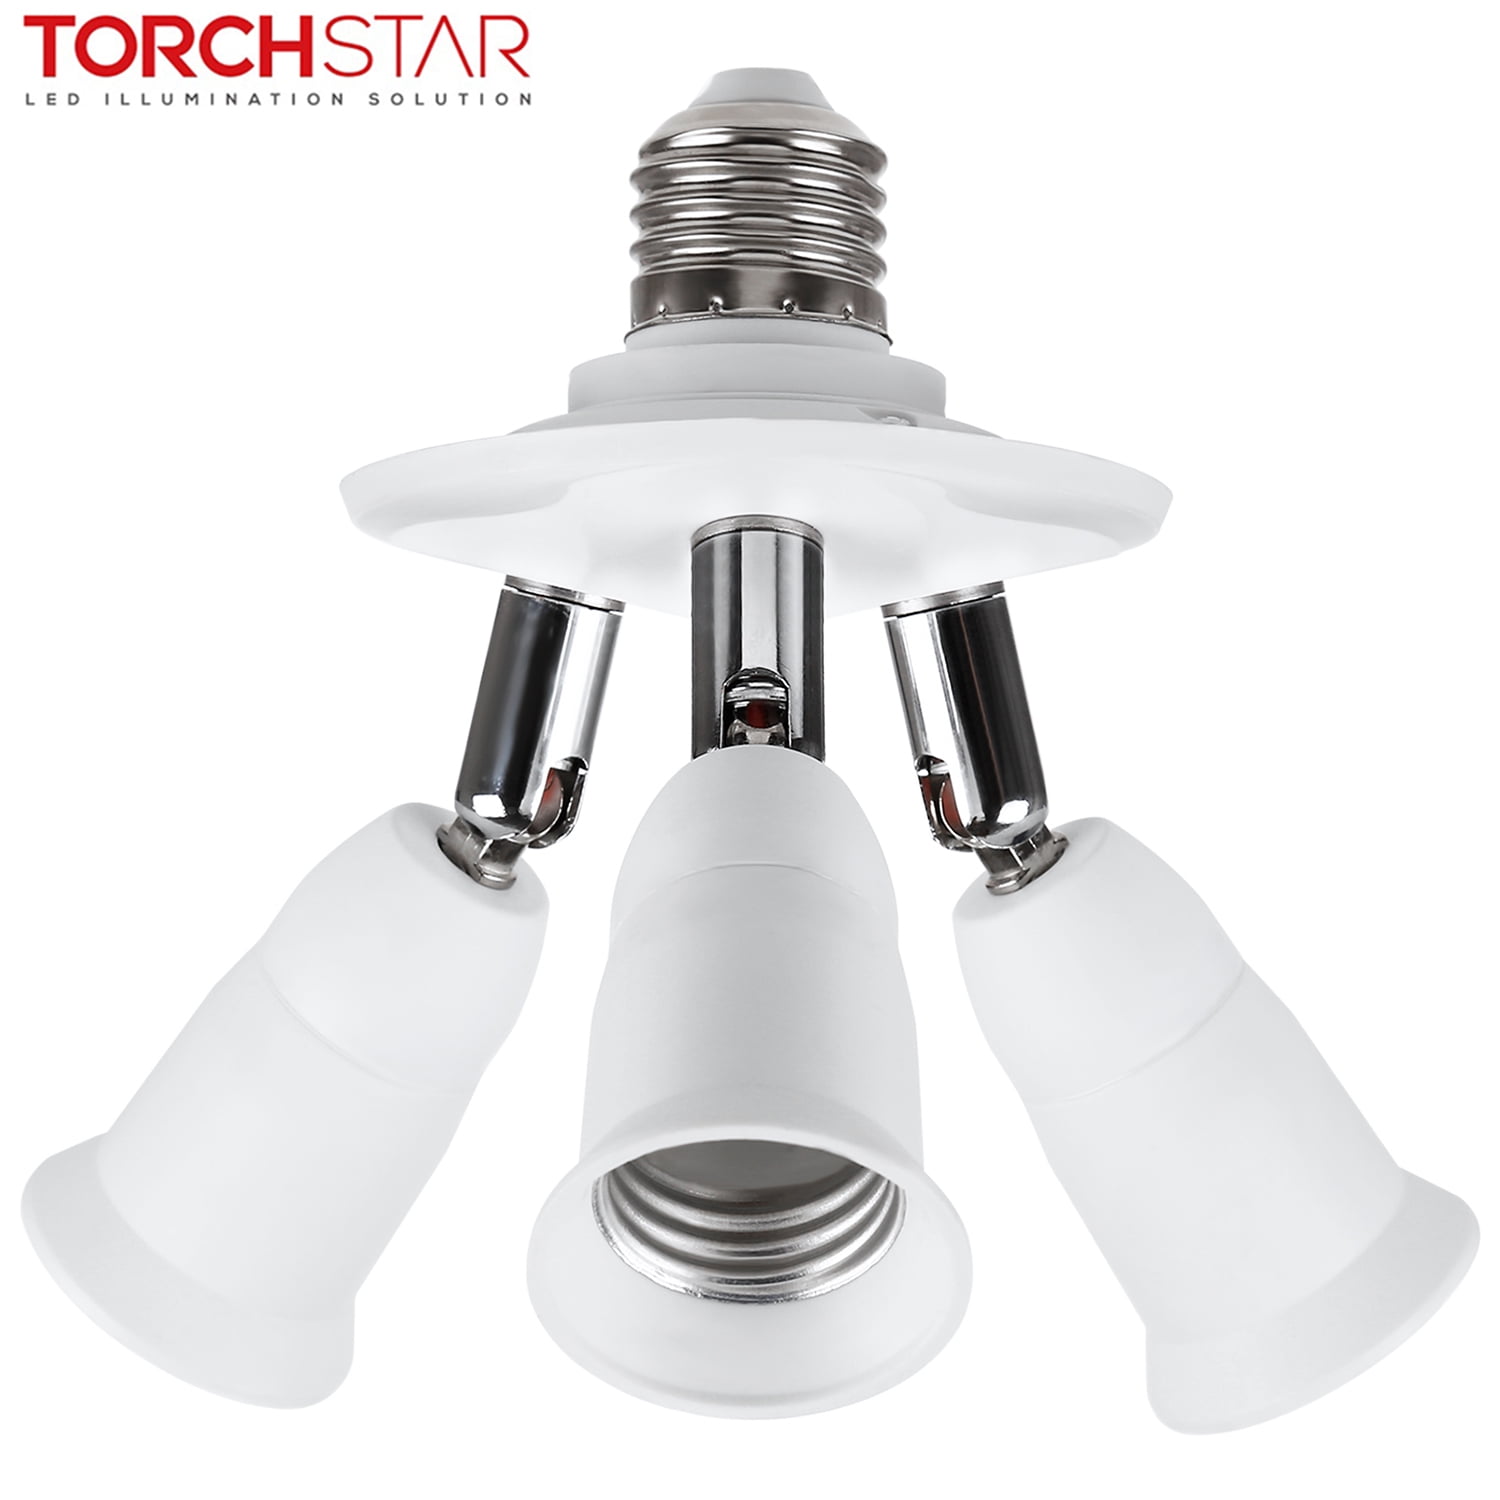 TORCHSTAR 3-in-1 Light Socket Splitter, E26 E27 Adapter Converter Standard LED Bulbs Holder, 360 Degrees Adjustable 180 Degree Bendable, Max Watt 180W, for Photography, Art Galleries Lighting